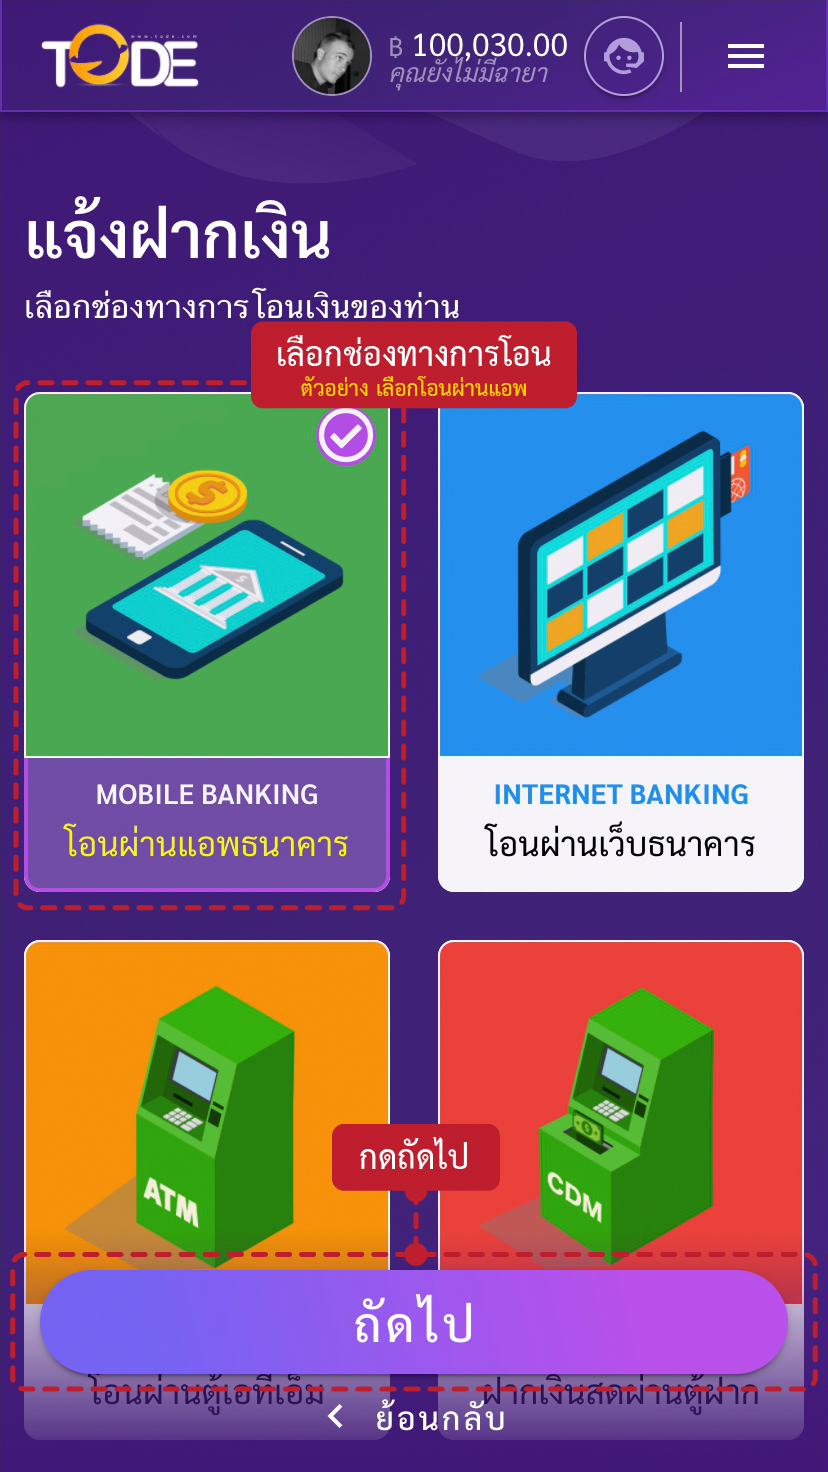 ขั้นตอนวิธีการฝากเงินเว็บโต๊ดเว็บแทงหวยอันดับ1ของไทยสูงสุดบาทละ1200